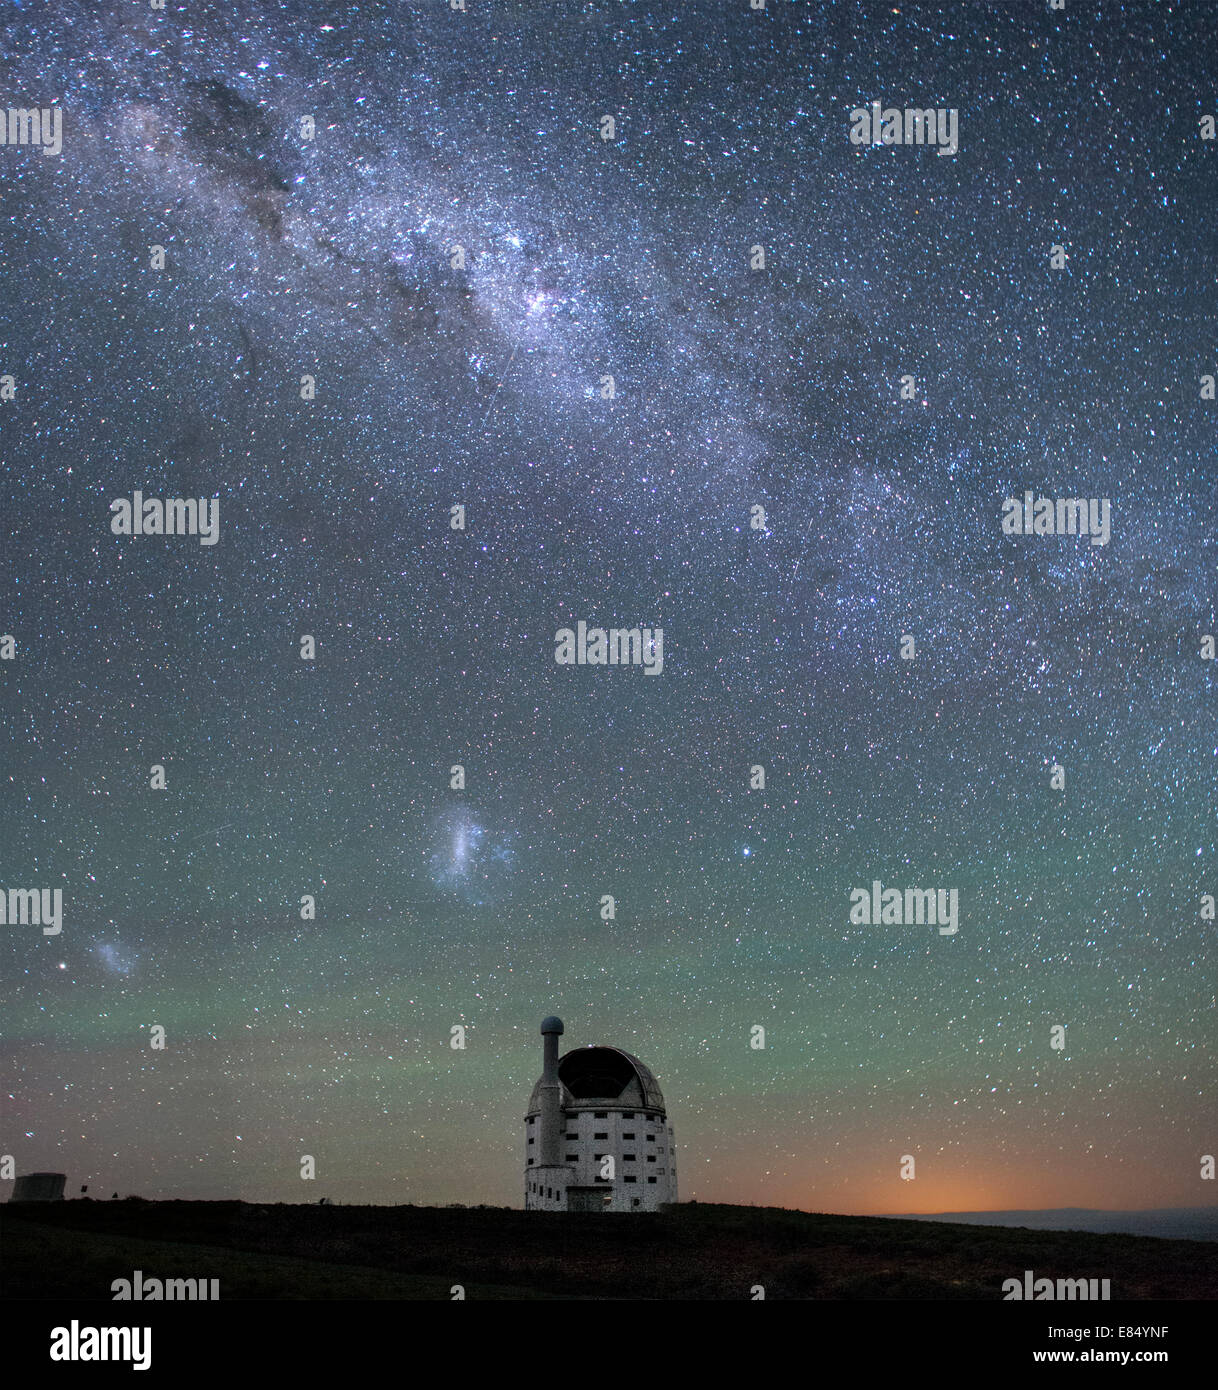 La Via Lattea e il sale (Southern African Large Telescope) in Sutherland, nel nord della provincia del Capo, in Sud Africa. Foto Stock